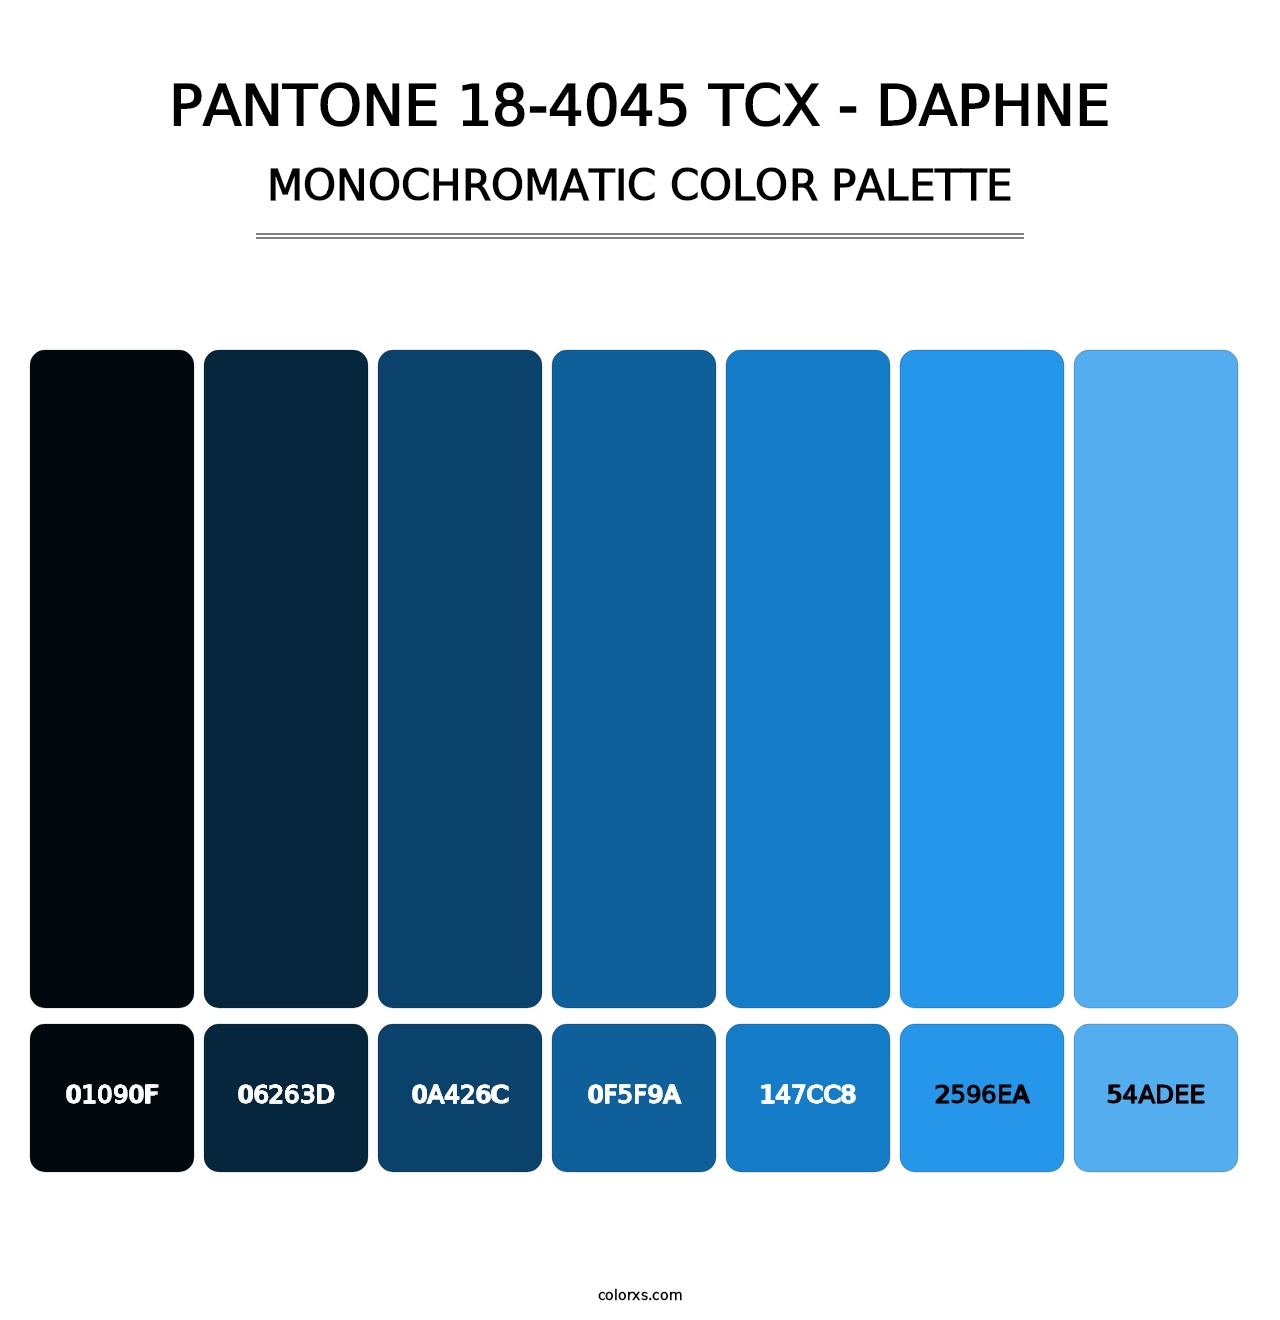 PANTONE 18-4045 TCX - Daphne - Monochromatic Color Palette